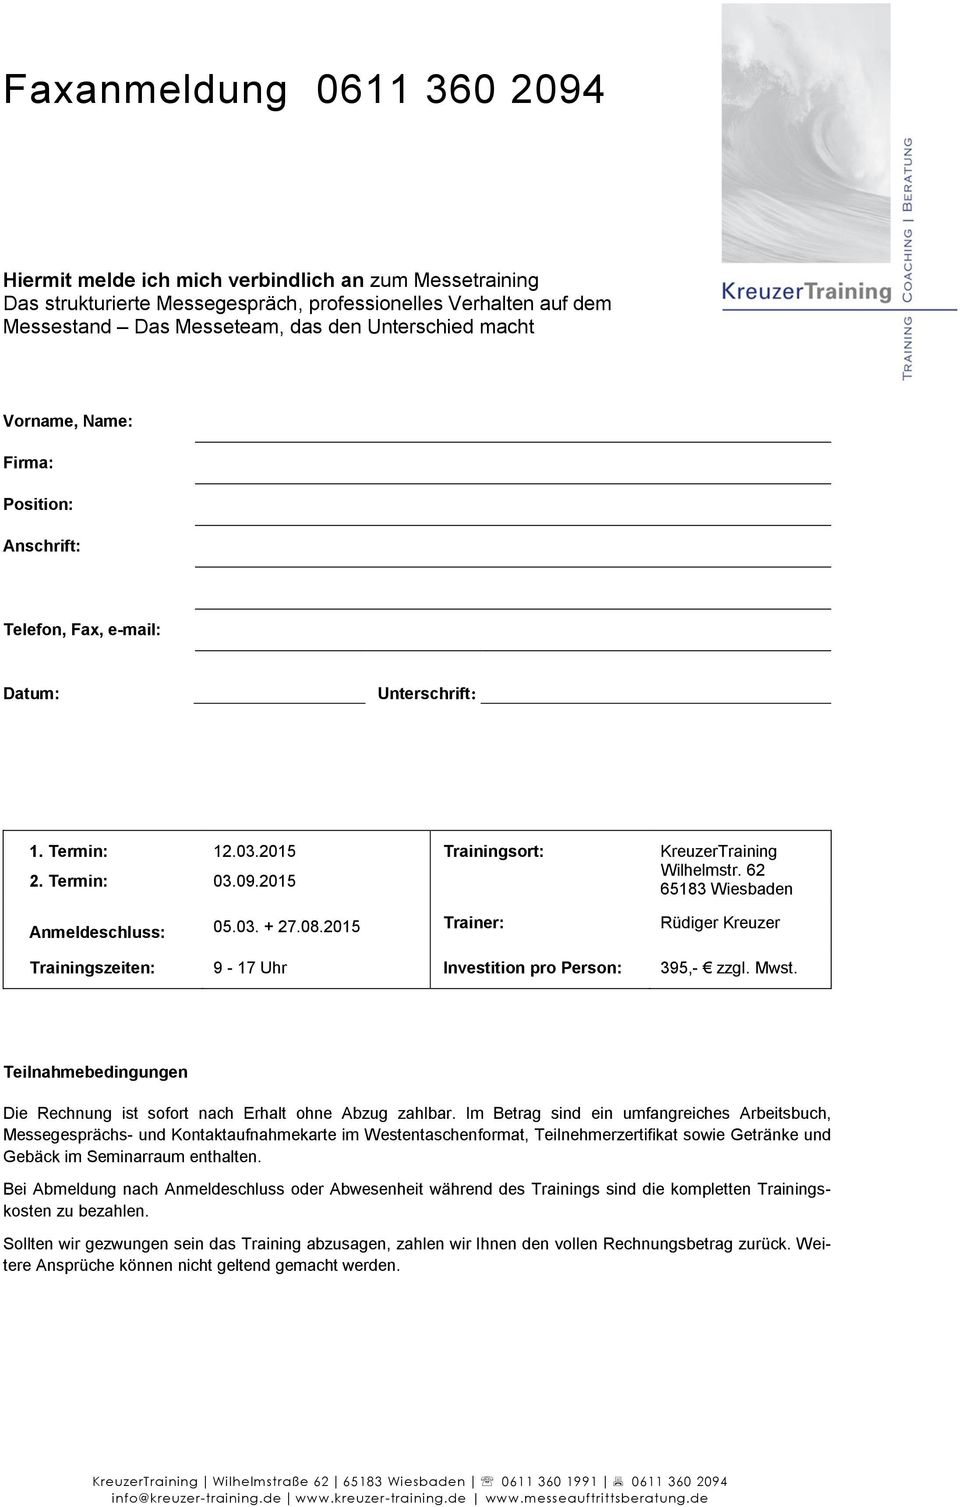 62 65183 Wiesbaden Anmeldeschluss: 05.03. + 27.08.2015 Trainer: Rüdiger Kreuzer Trainingszeiten: 9-17 Uhr Investition pro Person: 395,- zzgl. Mwst.